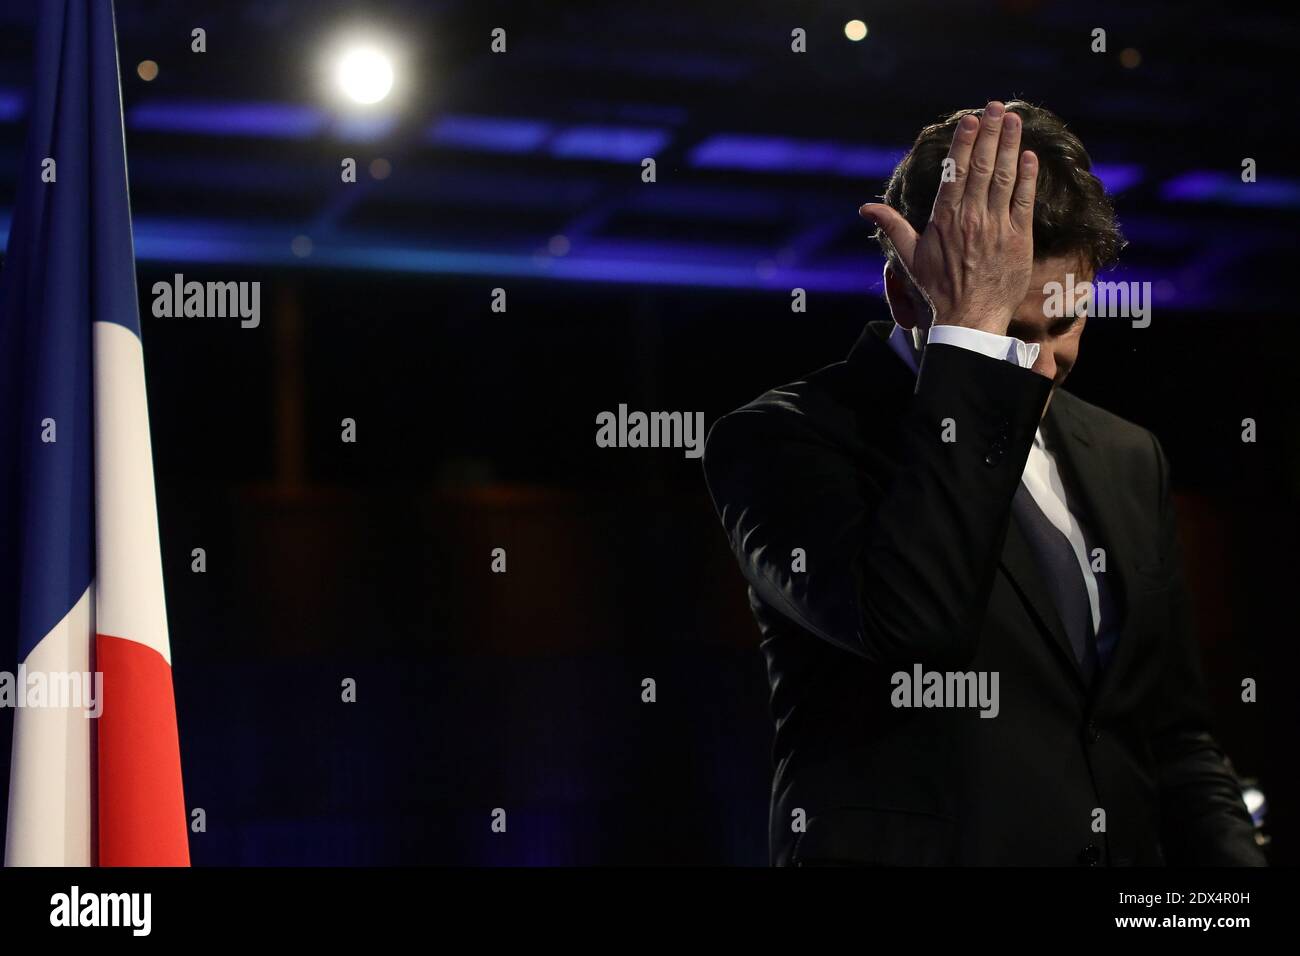 Il Ministro francese dell'economia Arnaud Montebourg ha tenuto un discorso mentre presenta il suo piano di ripresa economica per la Francia, presso il Ministero dell'Economia di Parigi, Francia, il 7 luglio 2014. Foto di Stephane Lemouton/ABACAPRESS.COM Foto Stock